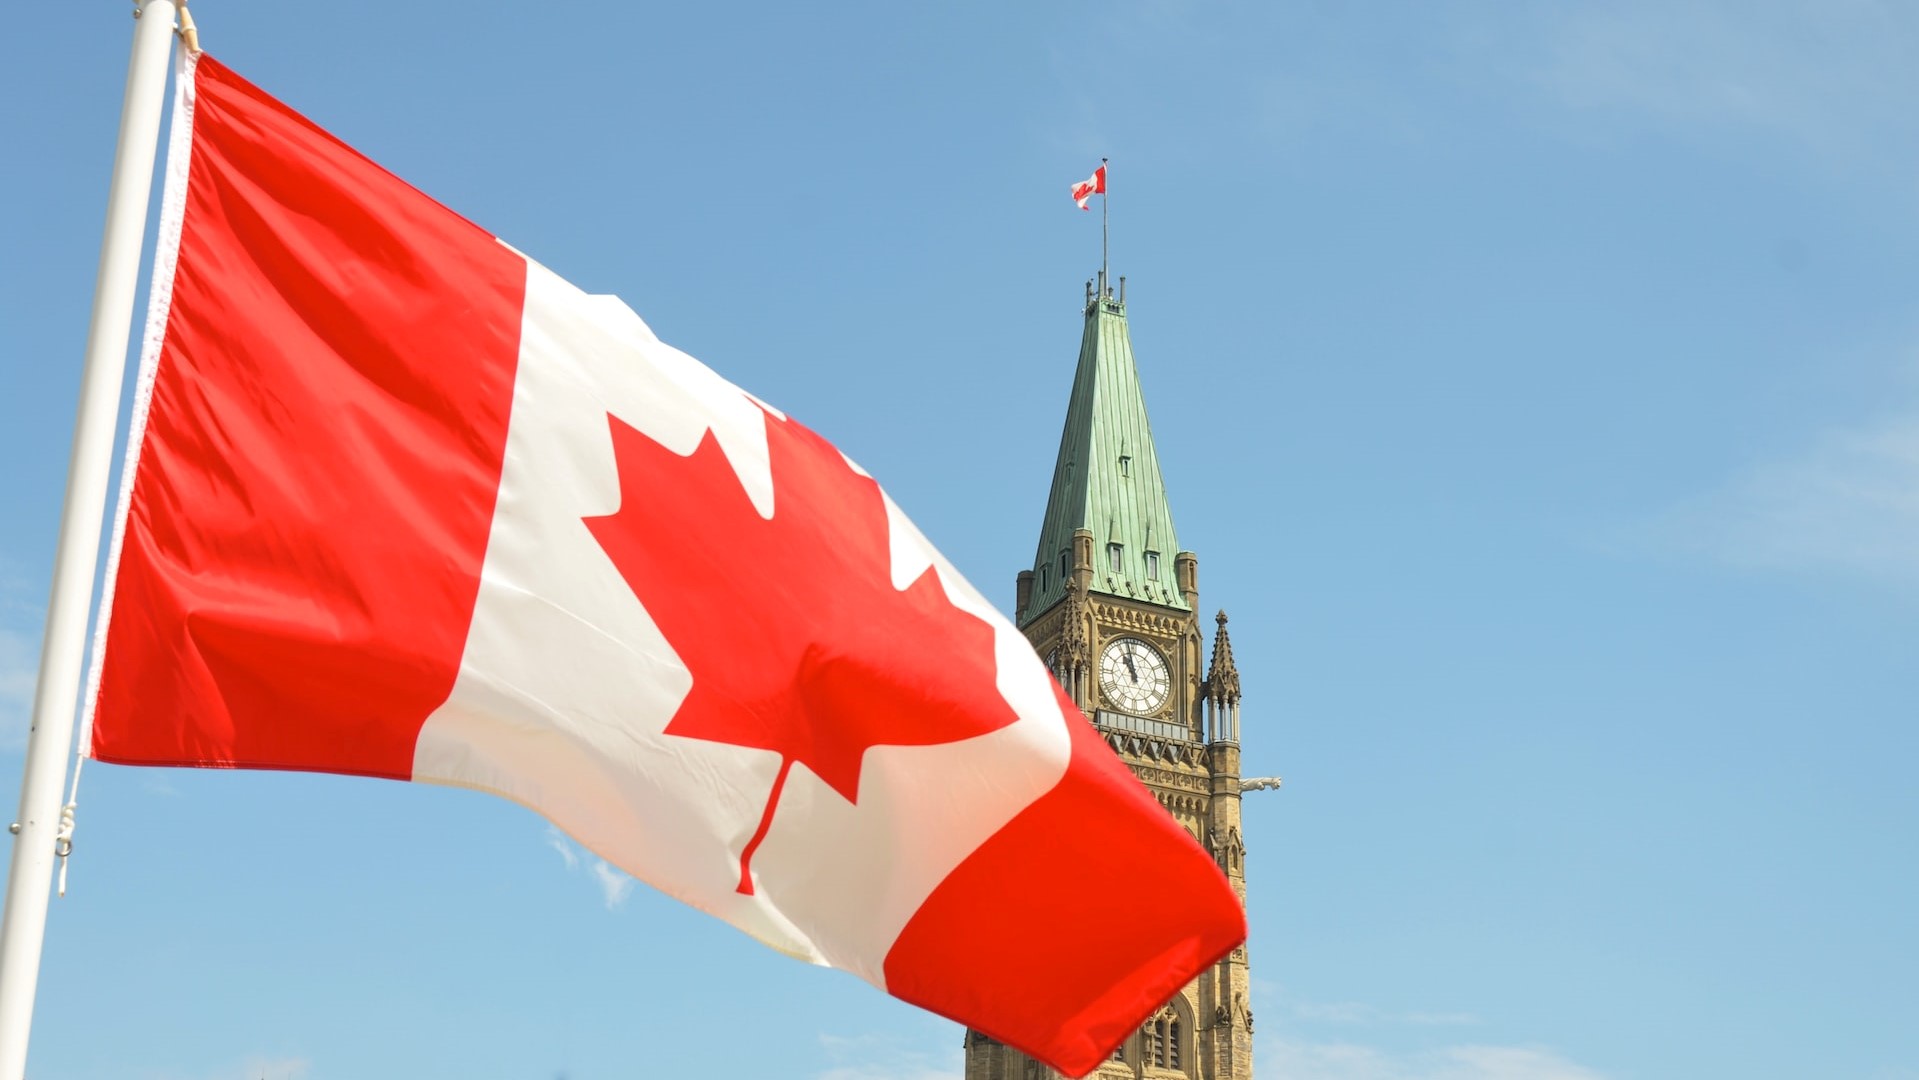 Die kanadische Flagge wird vor einem Turm angezeigt.